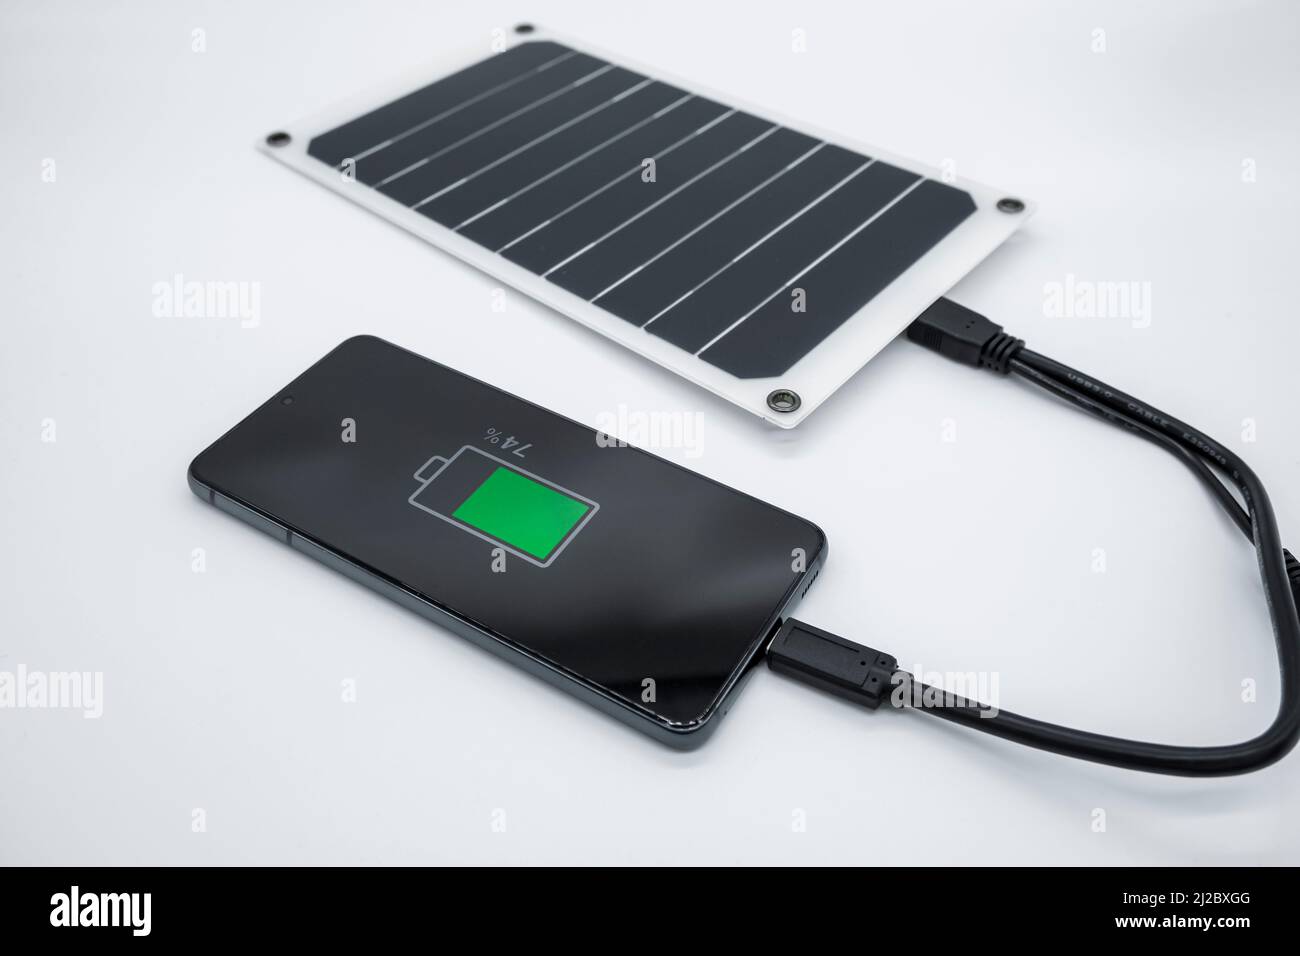 Carga de smartphone con panel solar fotovoltaico portátil, tecnología de energía verde renovable Foto de stock